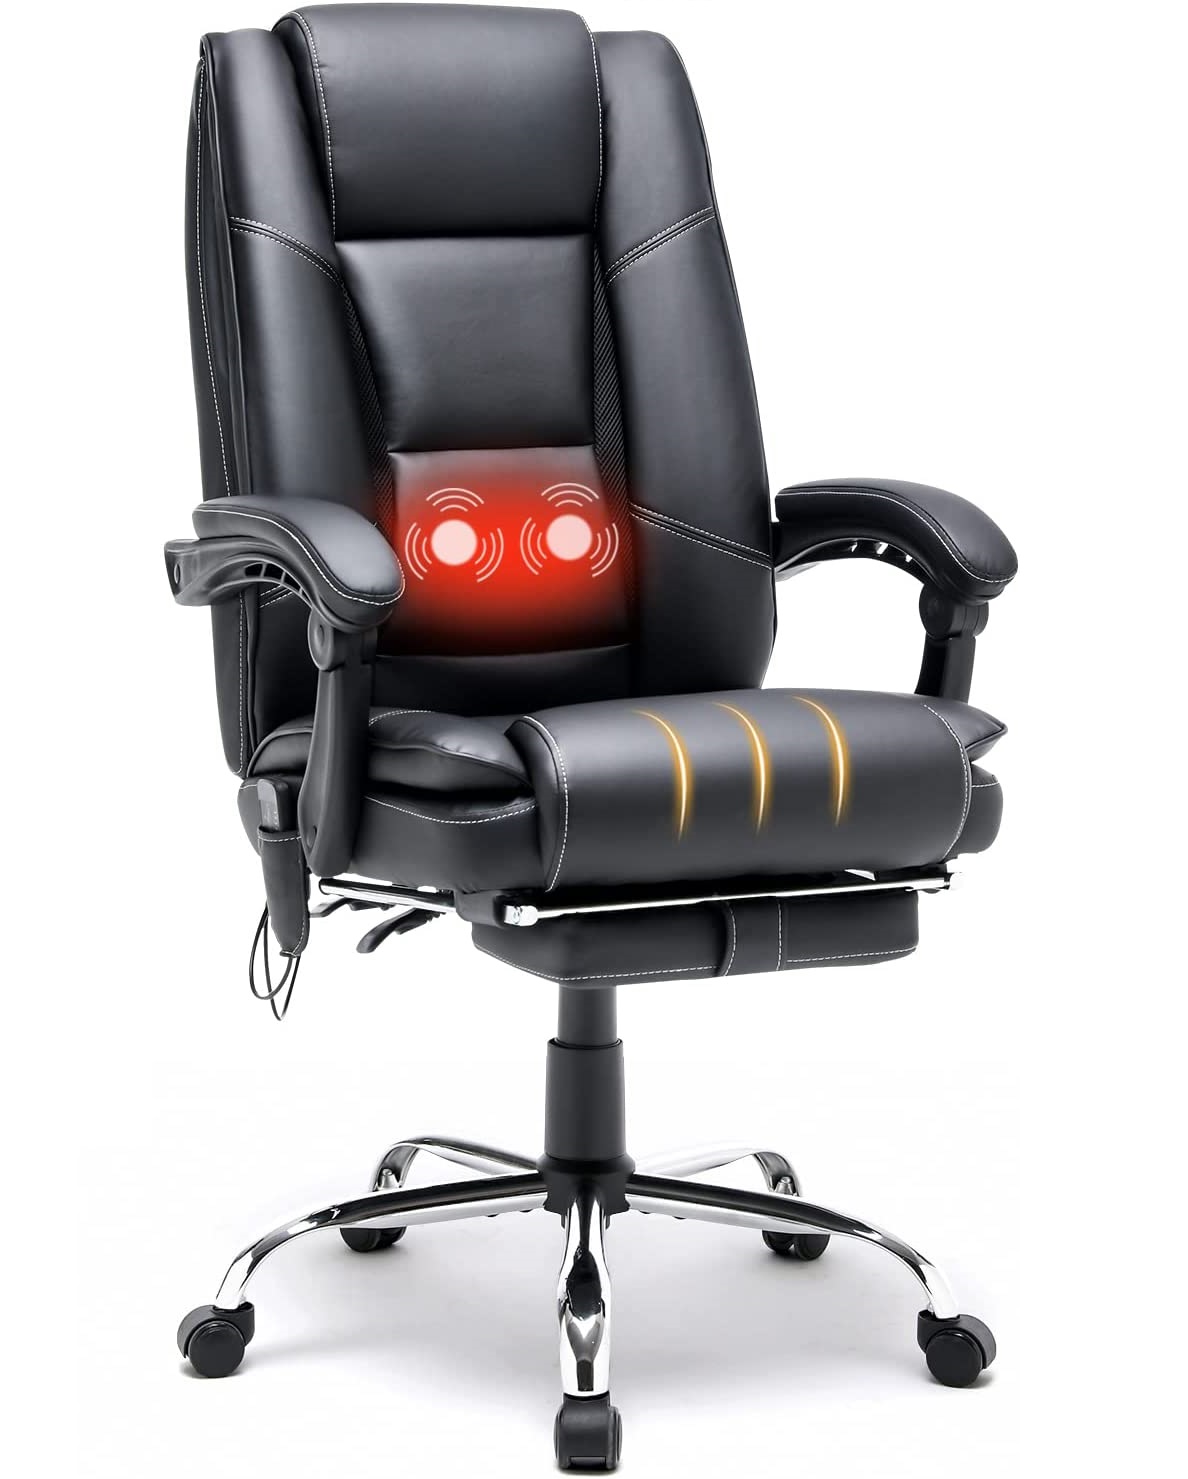 HOMREST Ergonomic Massage Office Chair